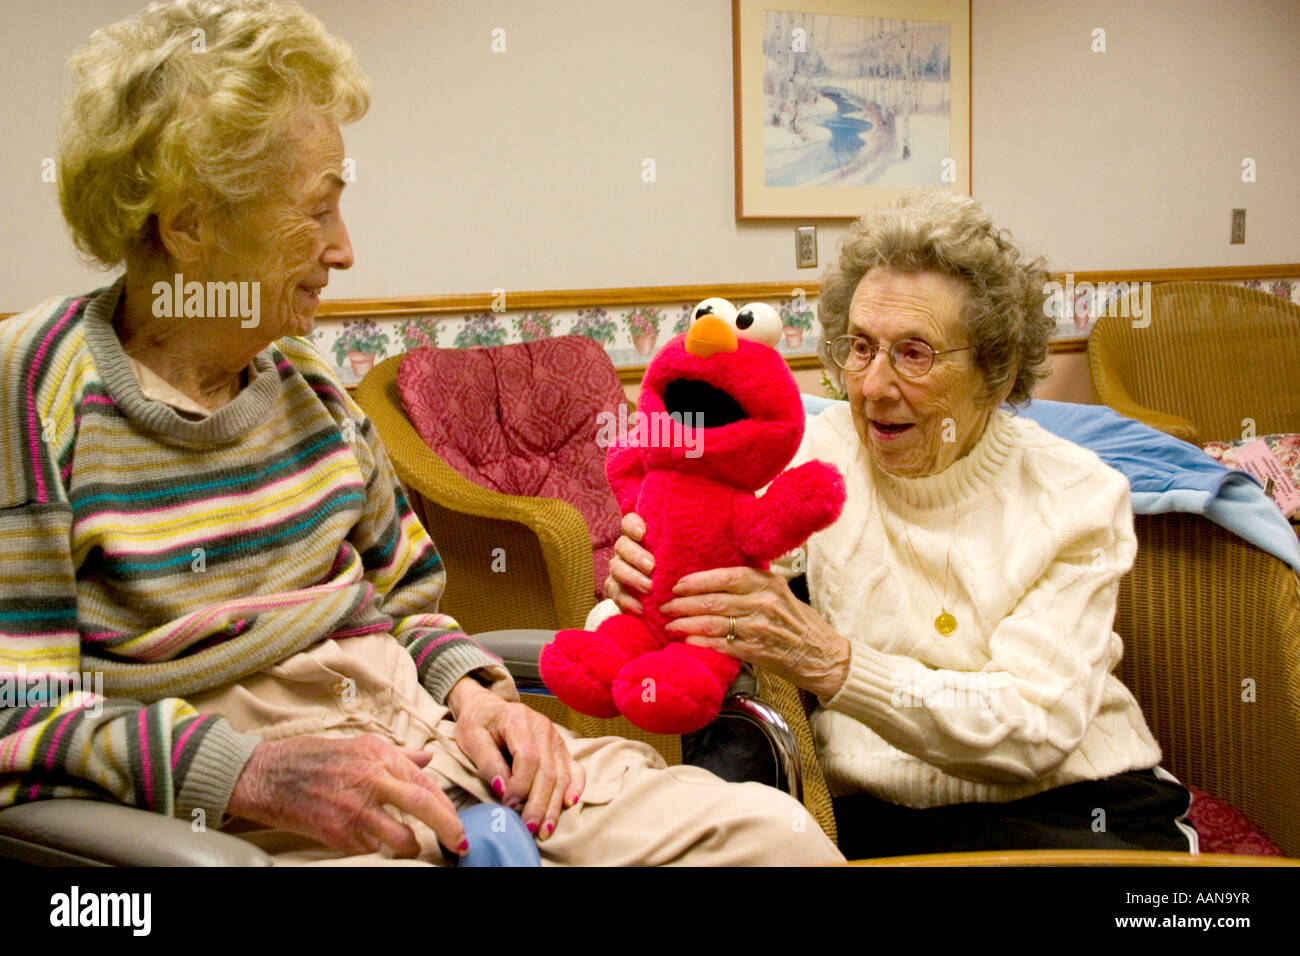 Sœurs à l'âge de 90 ans en soins infirmiers accueil joyeusement bénéficiant d'Elmo. Minnesota Bloomington Minnesota USA Accueil maçonnique Banque D'Images